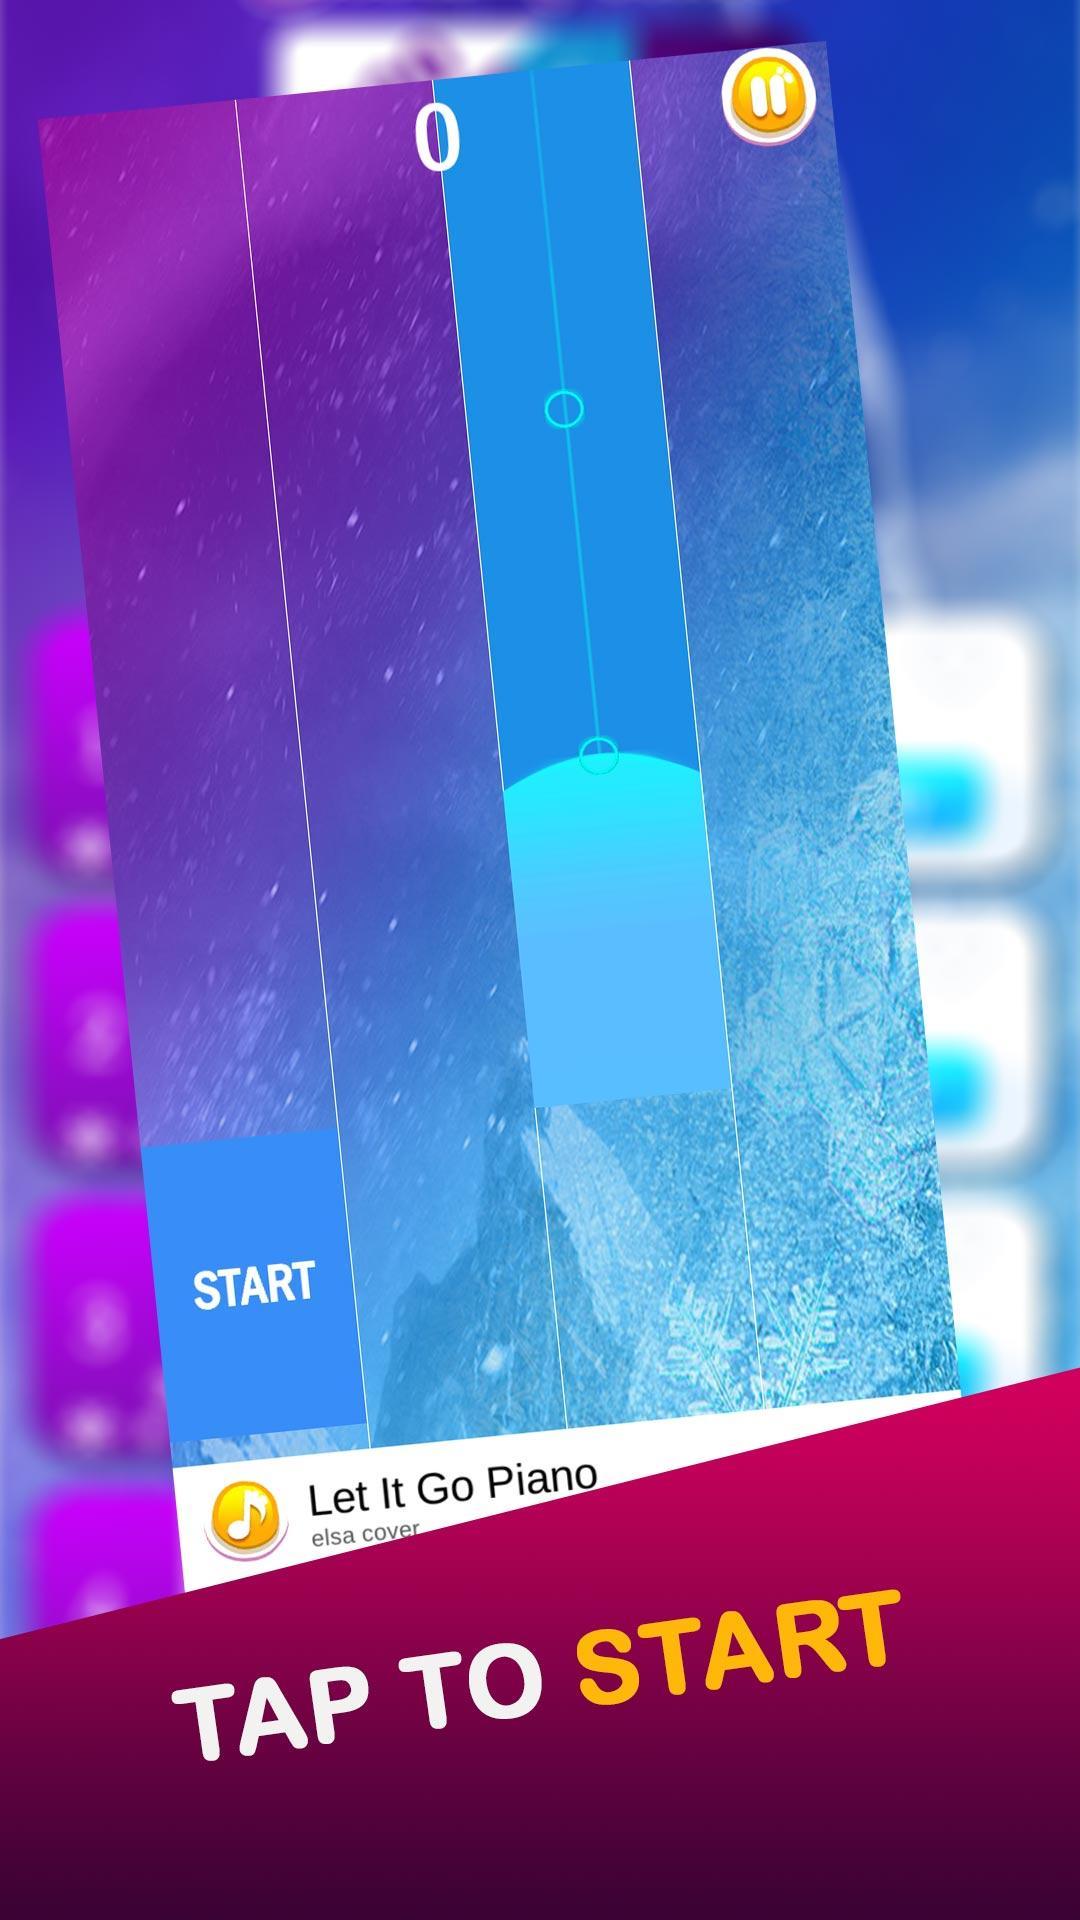 Piano Princess elssa 2 games 3.1 Screenshot 10